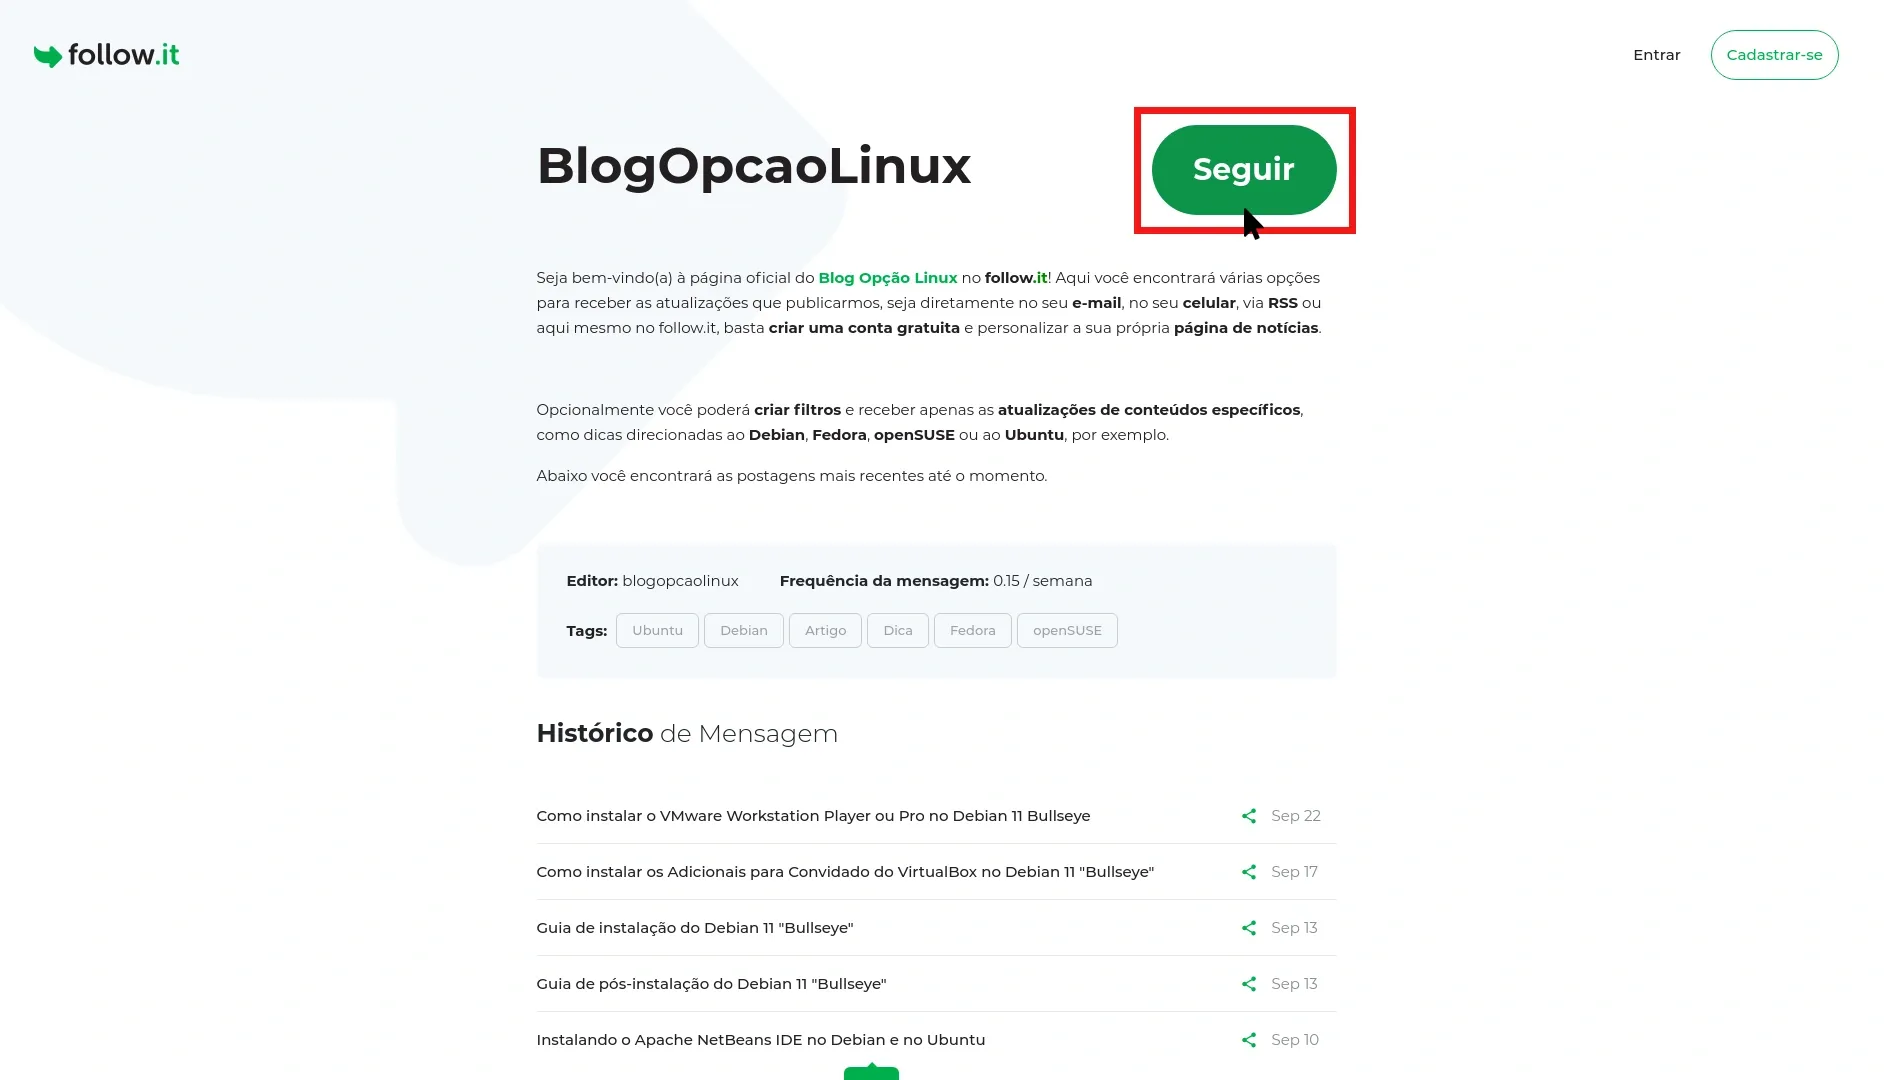 Página oficial do Blog Opção Linux no follow.it